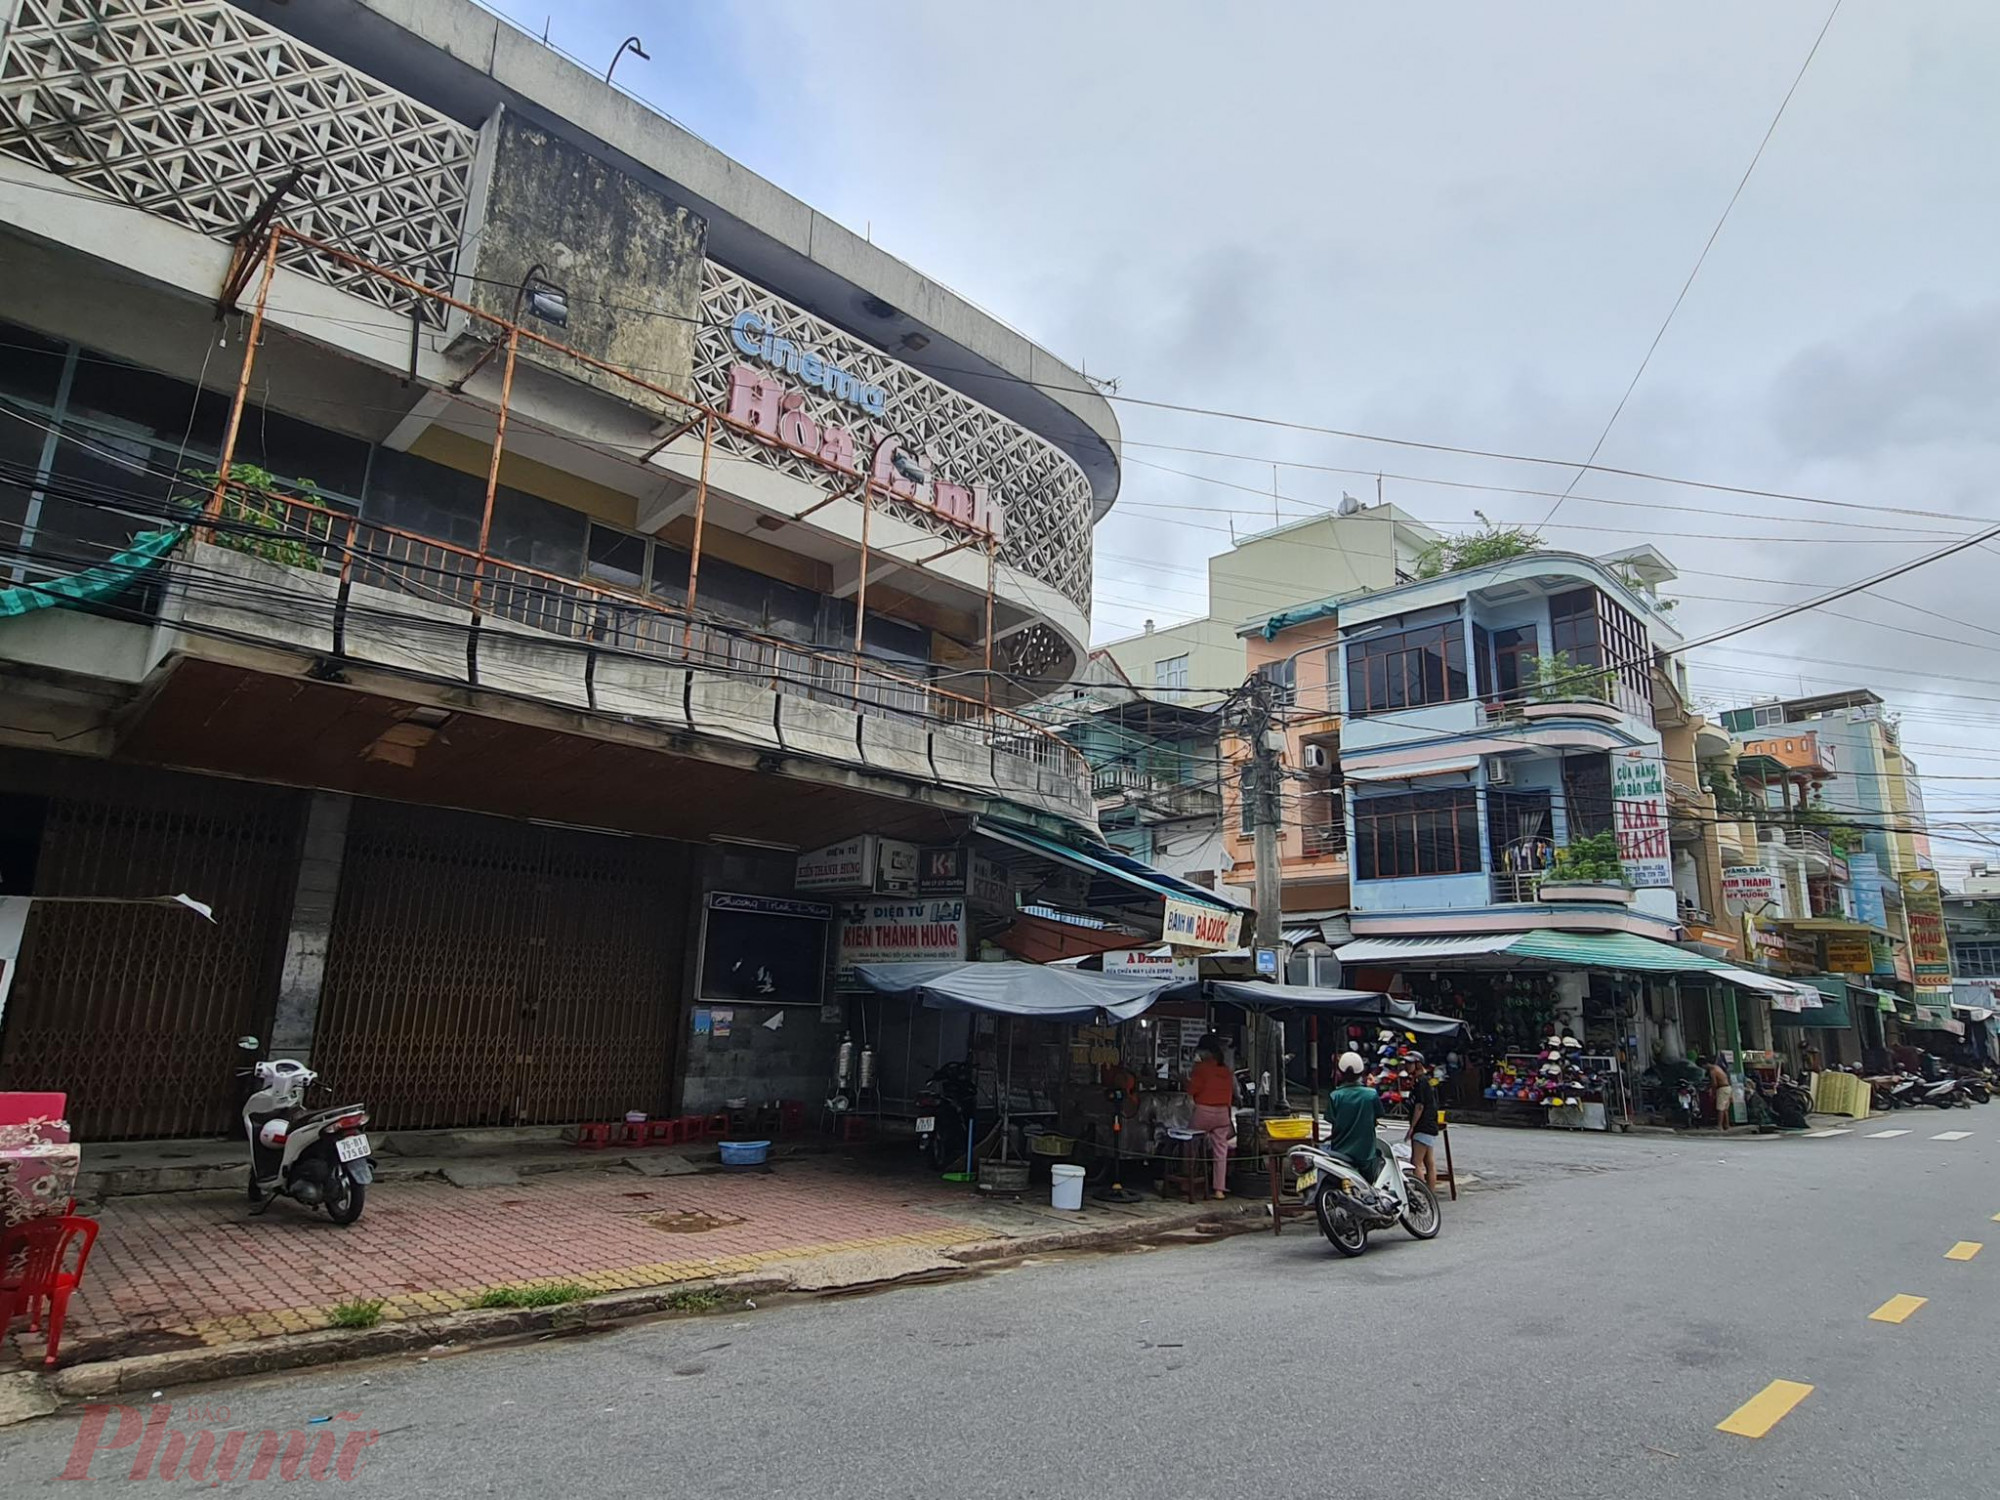 Cơ sở nhà, đất rạp chiếu bóng 1/5 (cũ) ở TP.Quảng Ngãi